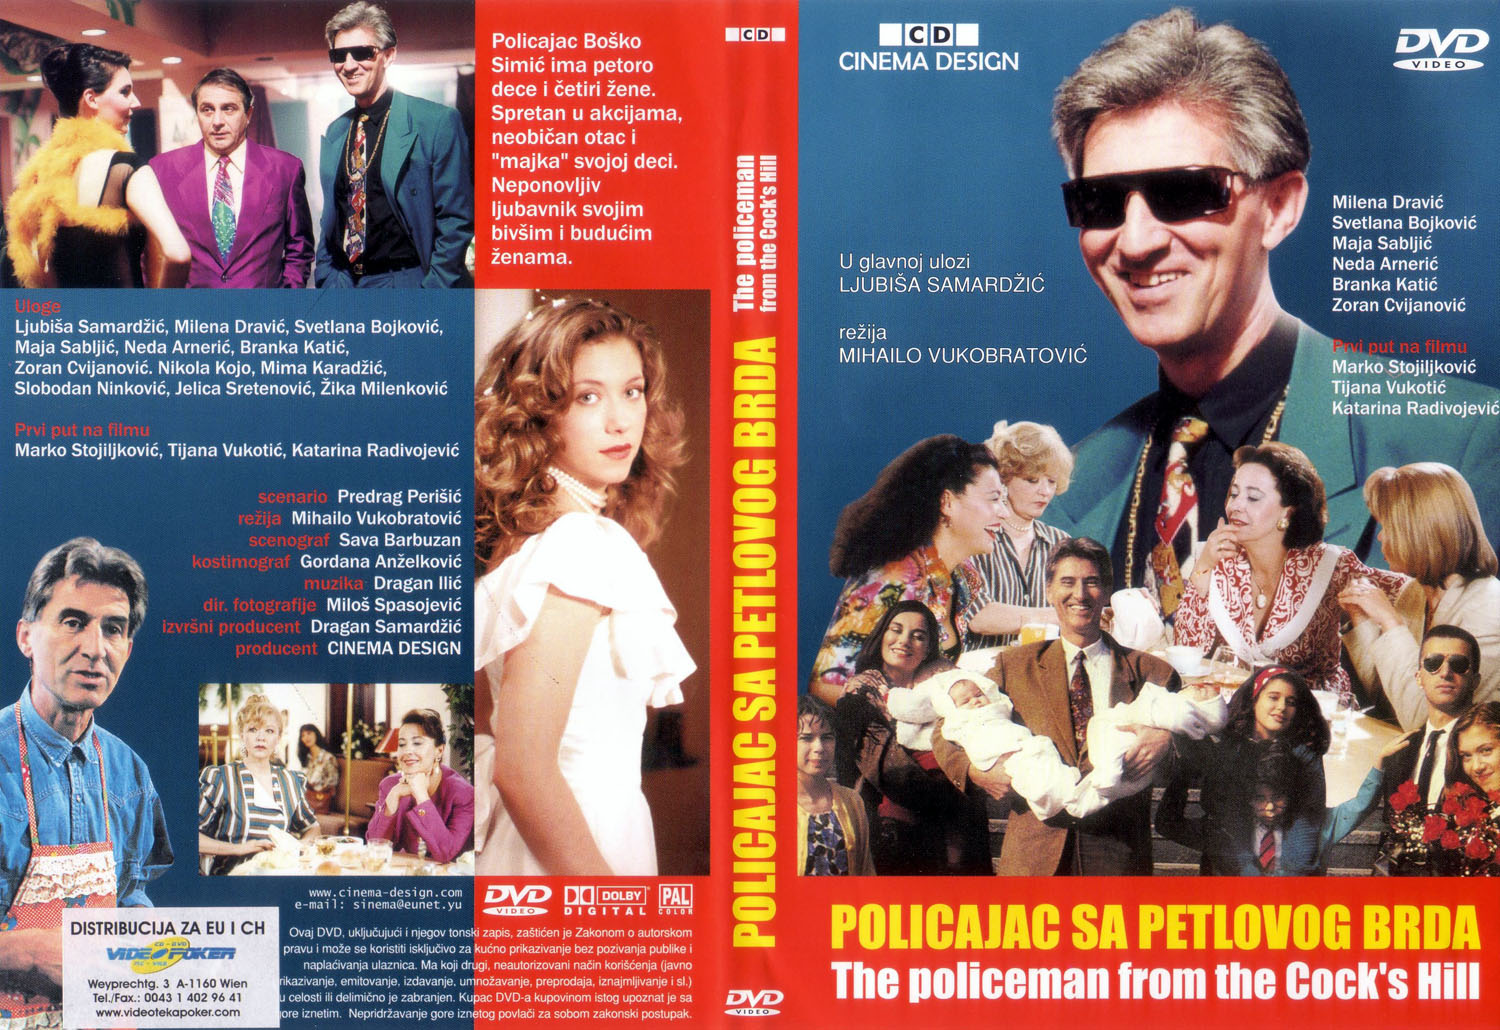 Click to view full size image -  DVD Cover - P - Policajac_sa_petlovog_brda_-_prednja_zadnja - Policajac_sa_petlovog_brda_-_prednja_zadnja.jpg